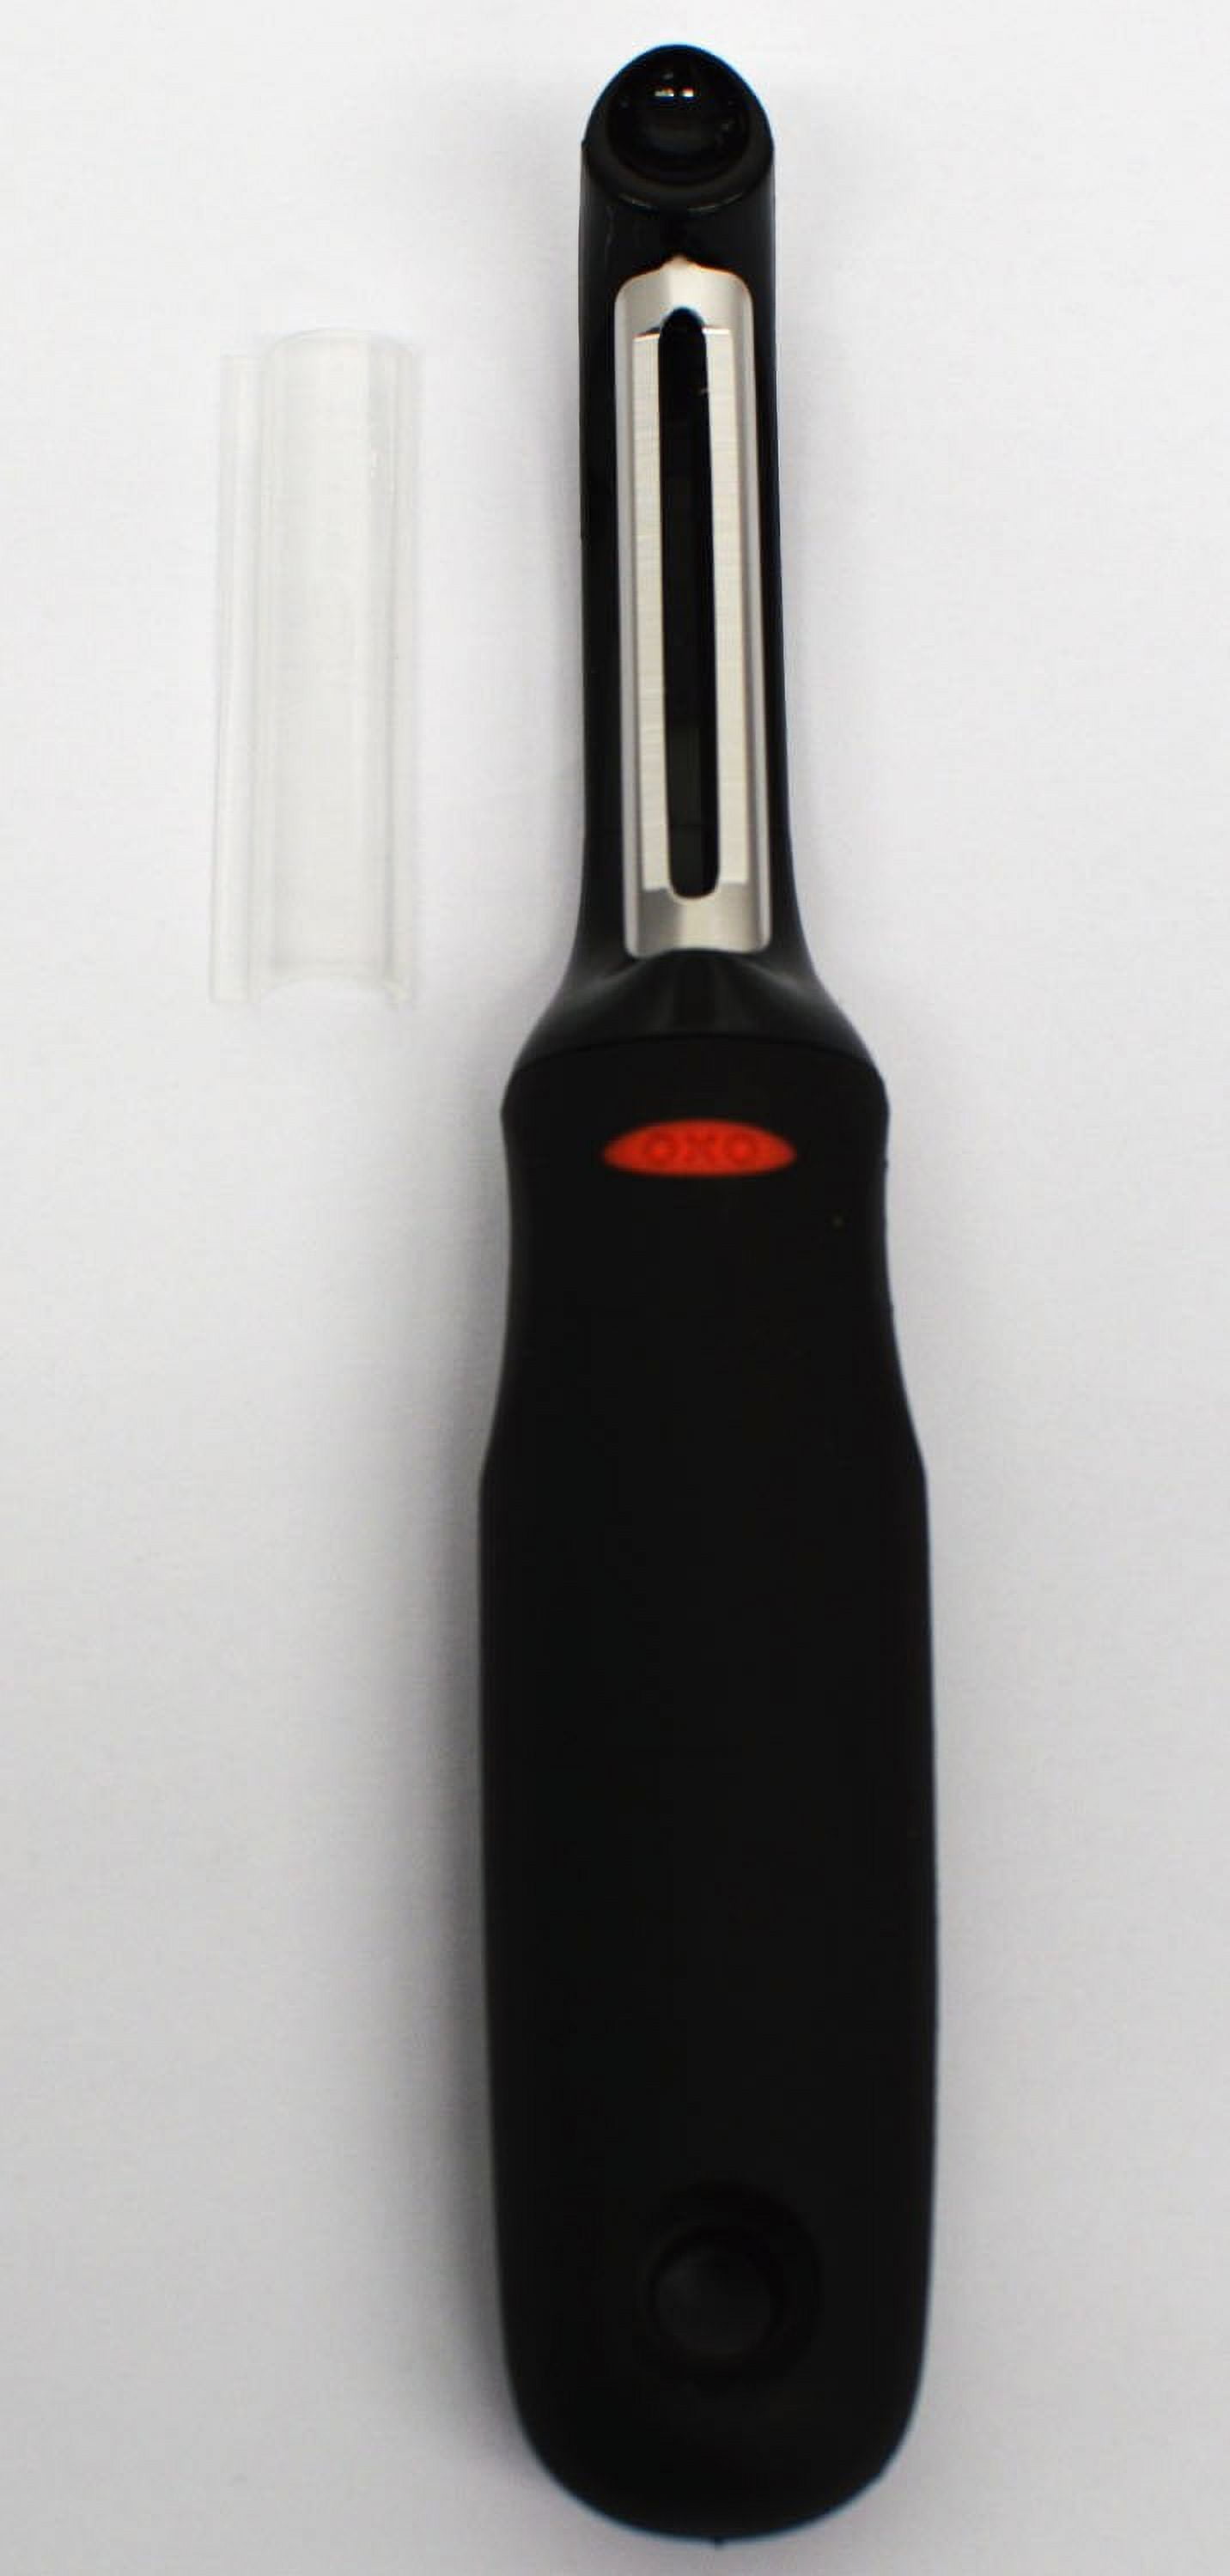 OXO Softworks Peeler Stainless Steel Blade Y Peeler Potato Eyer 81051 New,  Black